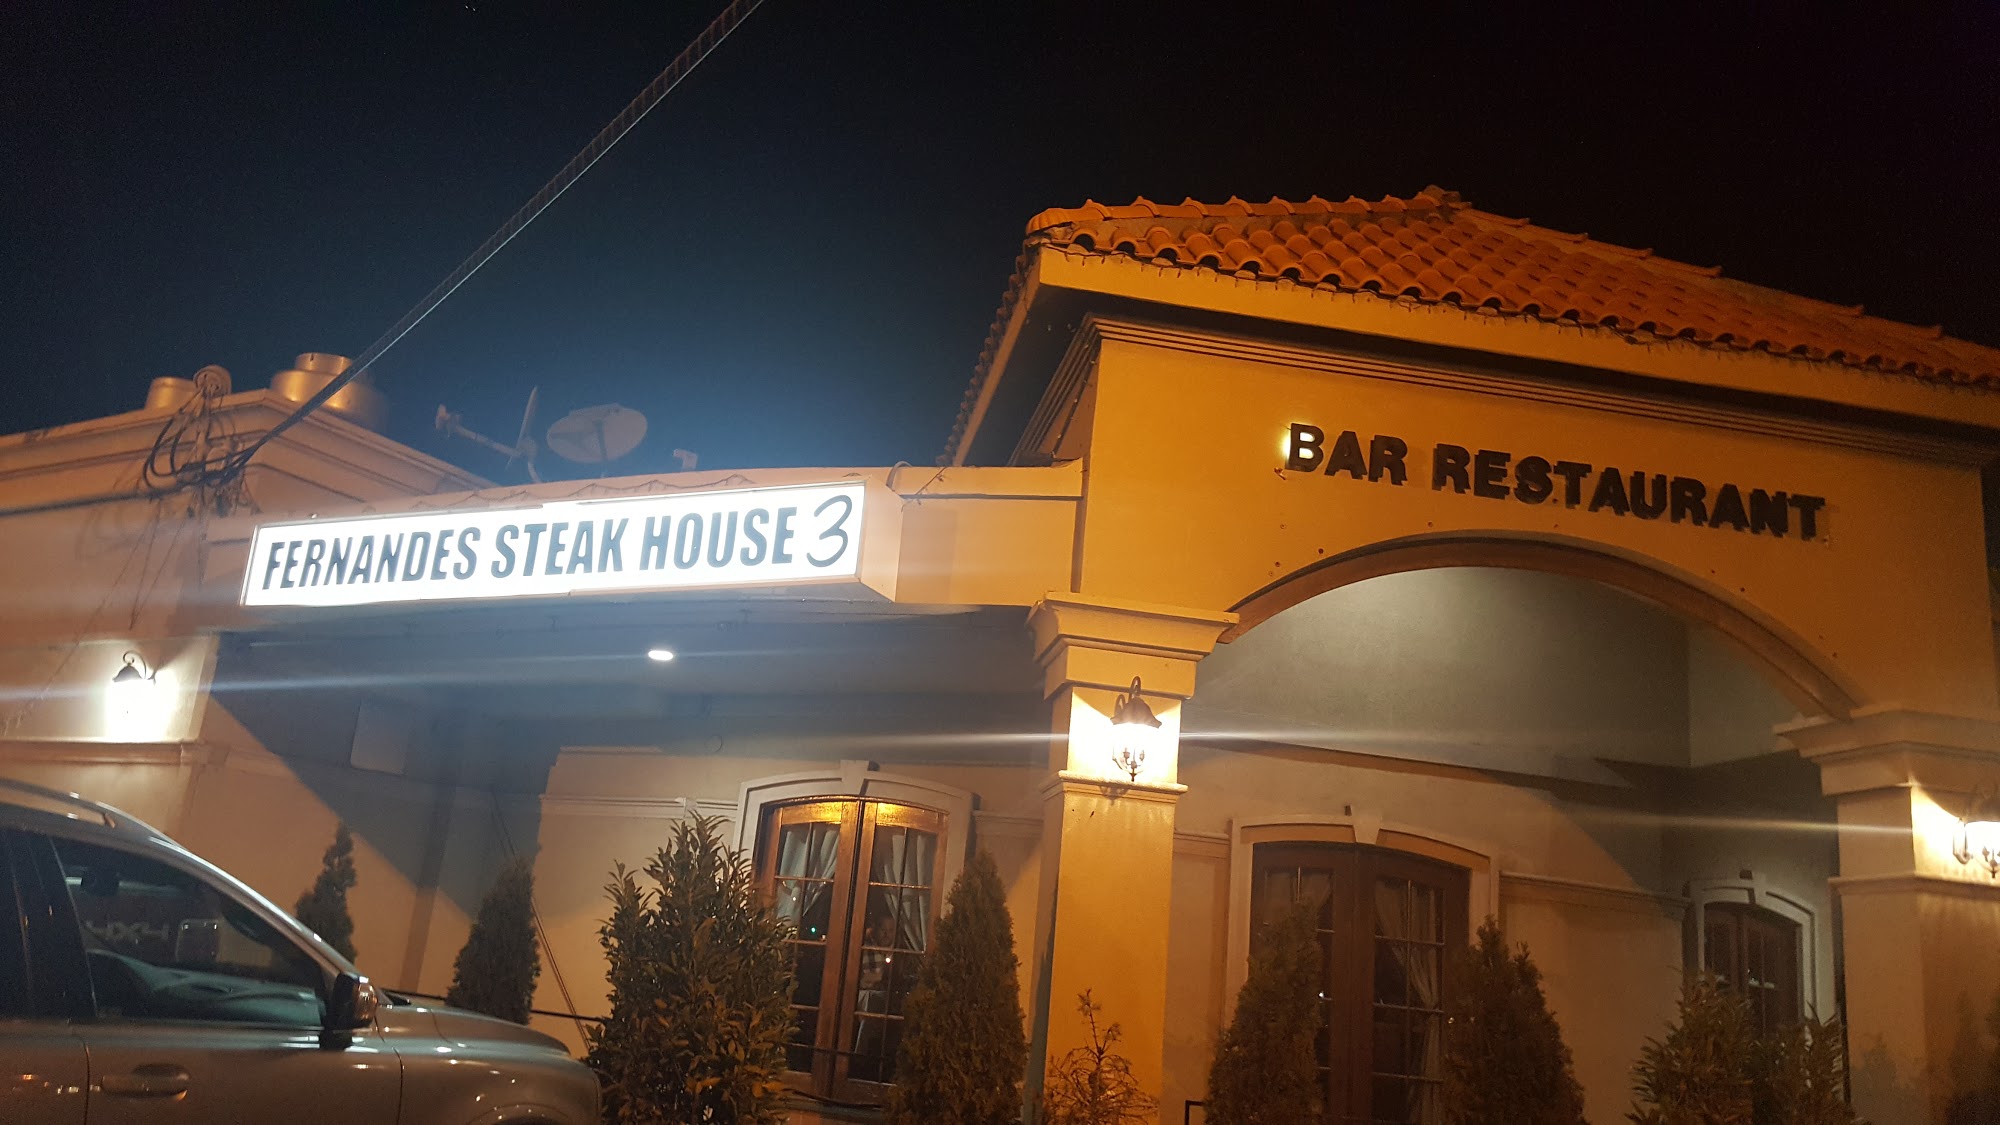 Fernandes Steakhouse 3